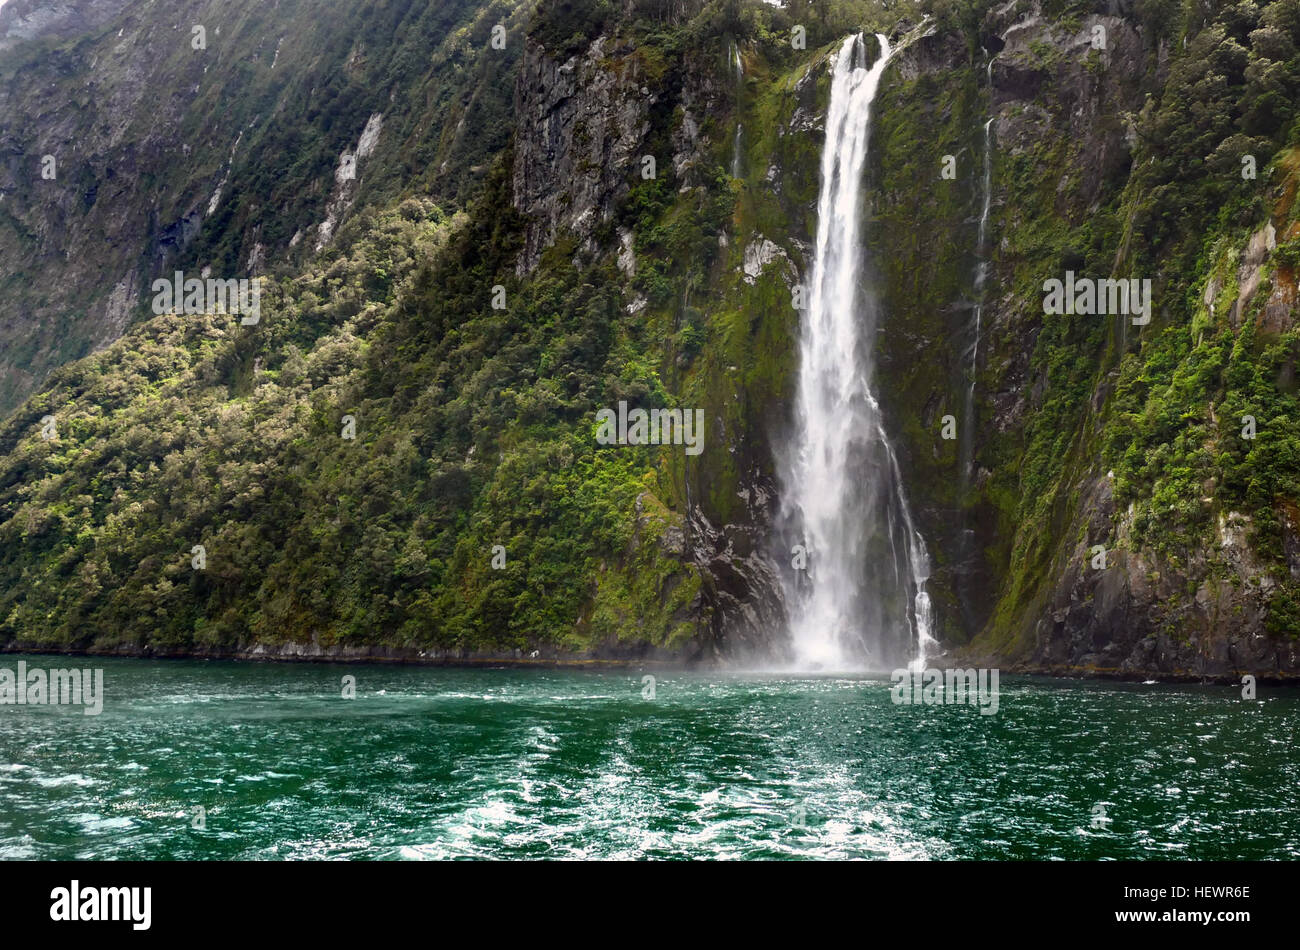 L'une des attractions à voir des cascades de Nouvelle-Zélande, Stirling Falls, deuxième nom Waimanu Falls, est la plus belle cascade dans le célèbre Milford Sound. Accessible via un ou une croisière Milford Sound Milford Sound Vol panoramique. Banque D'Images